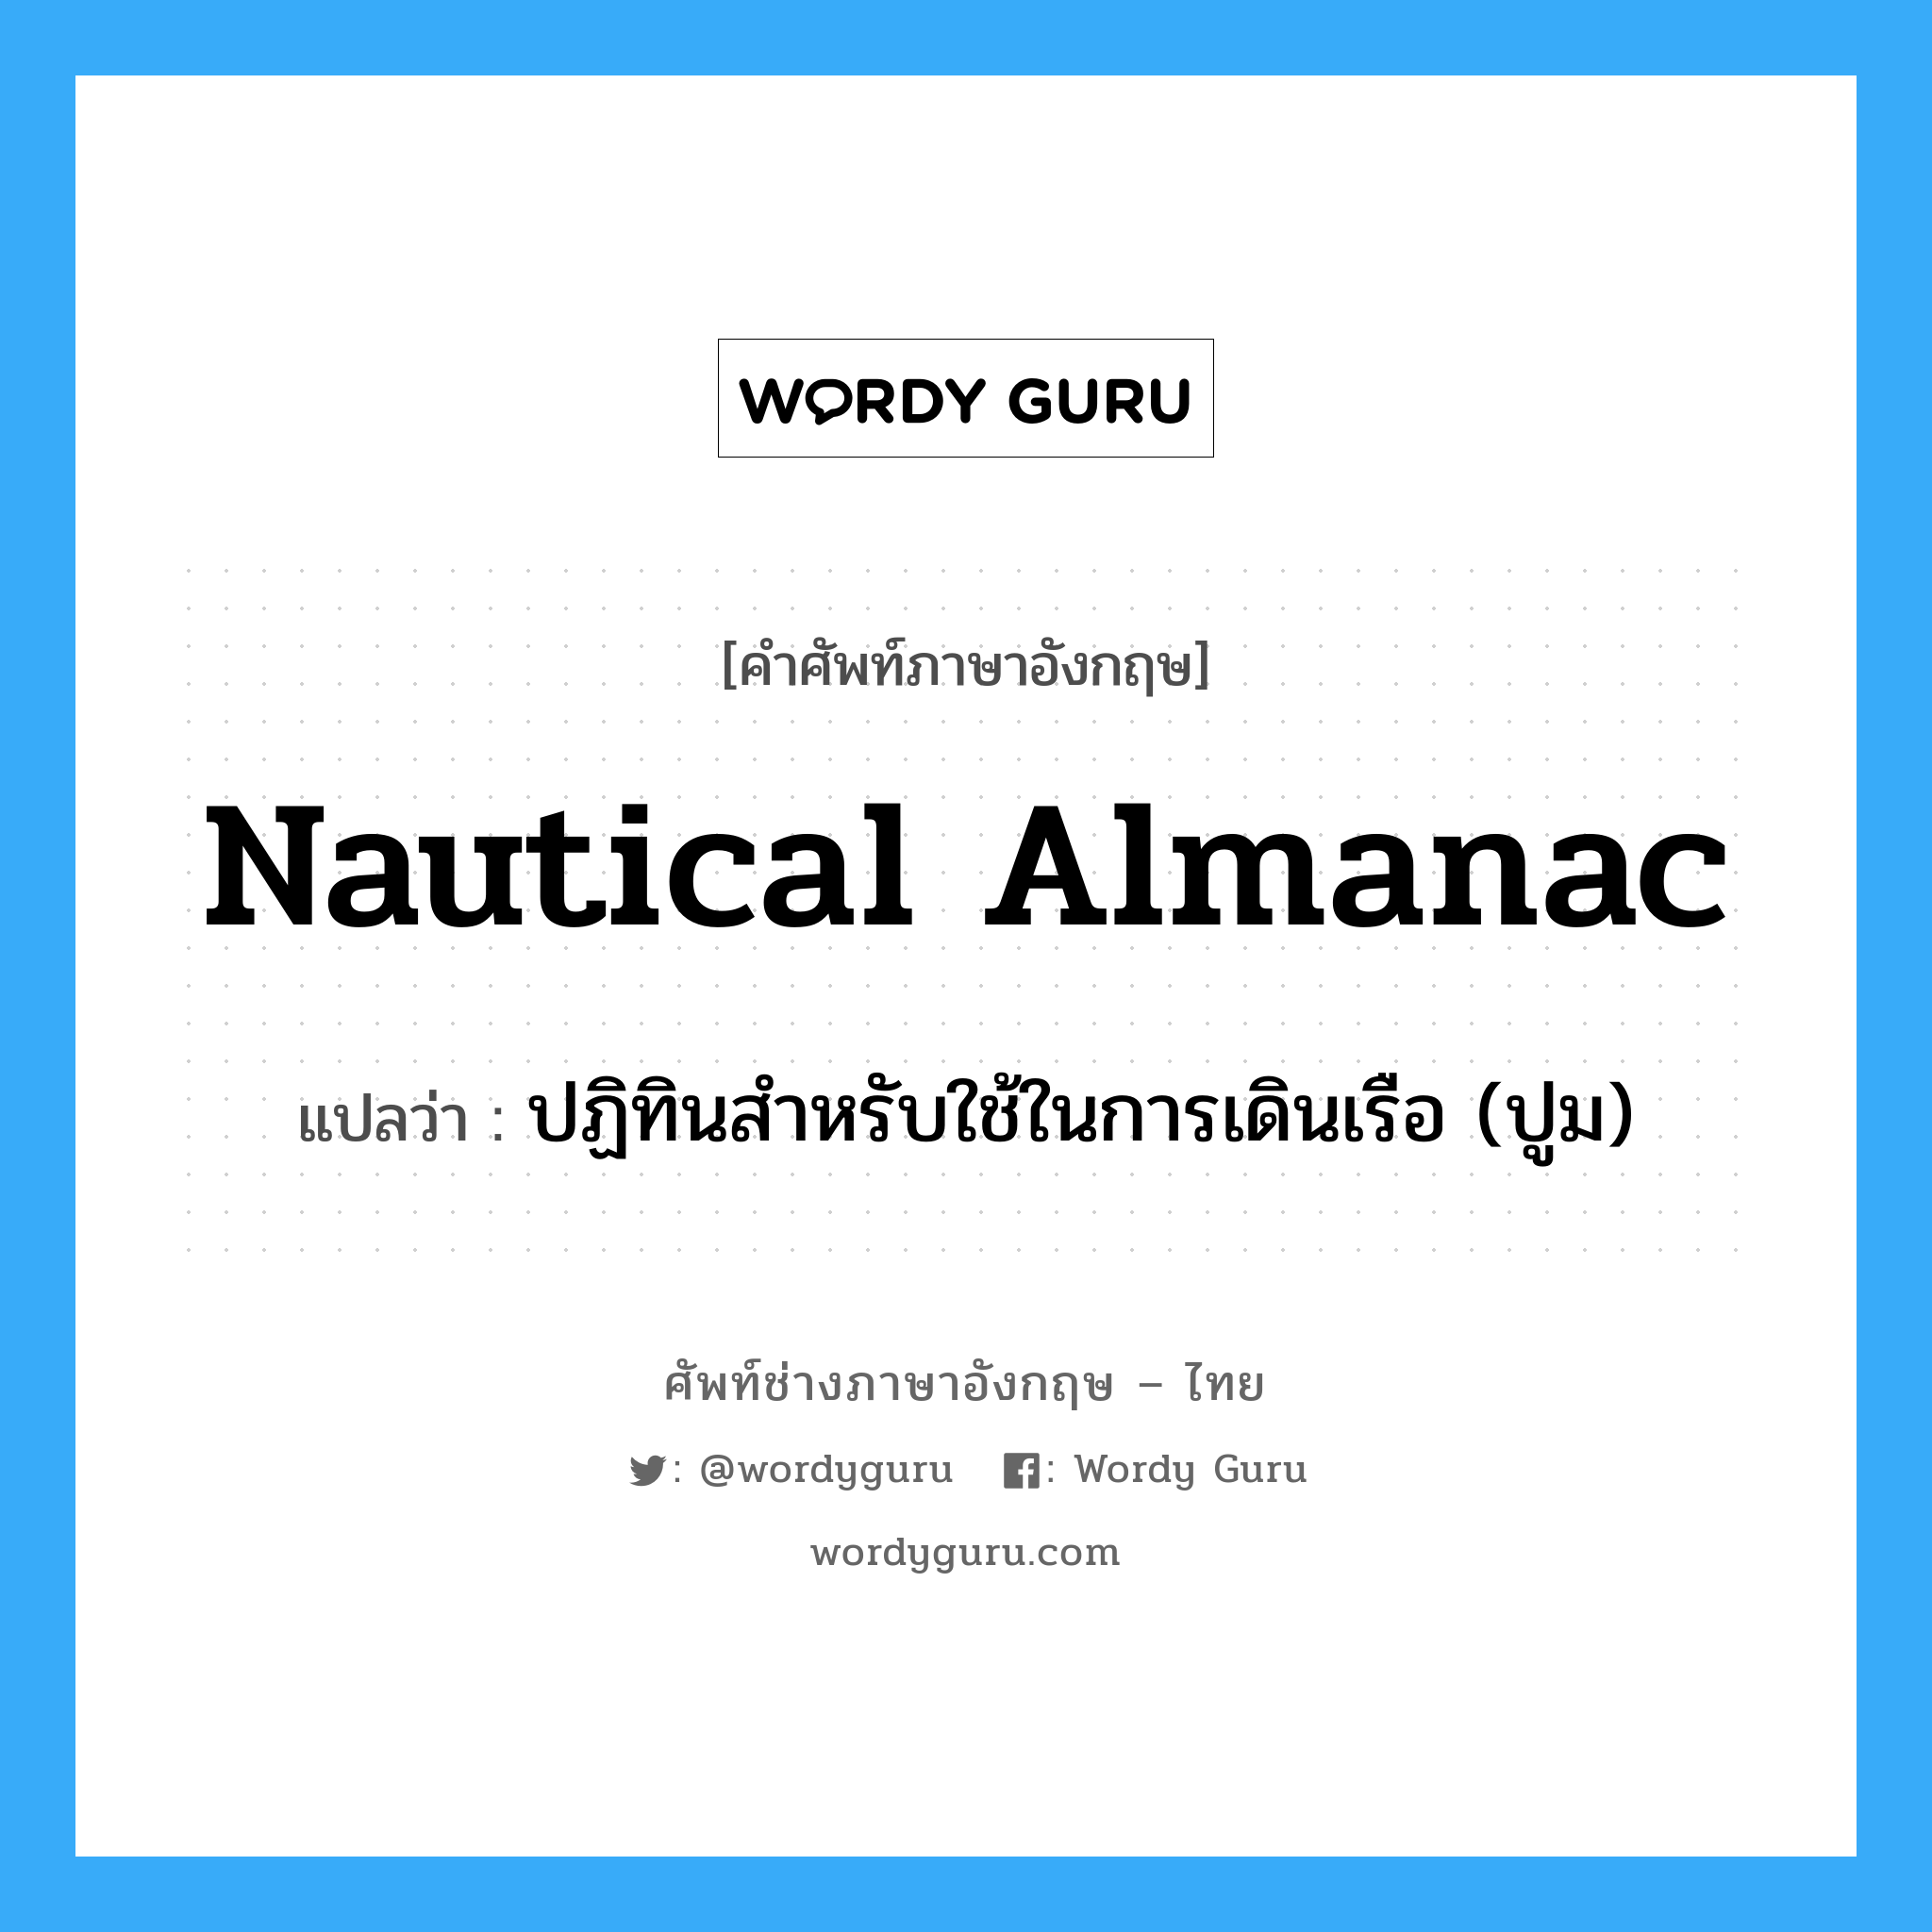 ปฏิทินสำหรับใช้ในการเดินเรือ (ปูม) ภาษาอังกฤษ?, คำศัพท์ช่างภาษาอังกฤษ - ไทย ปฏิทินสำหรับใช้ในการเดินเรือ (ปูม) คำศัพท์ภาษาอังกฤษ ปฏิทินสำหรับใช้ในการเดินเรือ (ปูม) แปลว่า nautical almanac